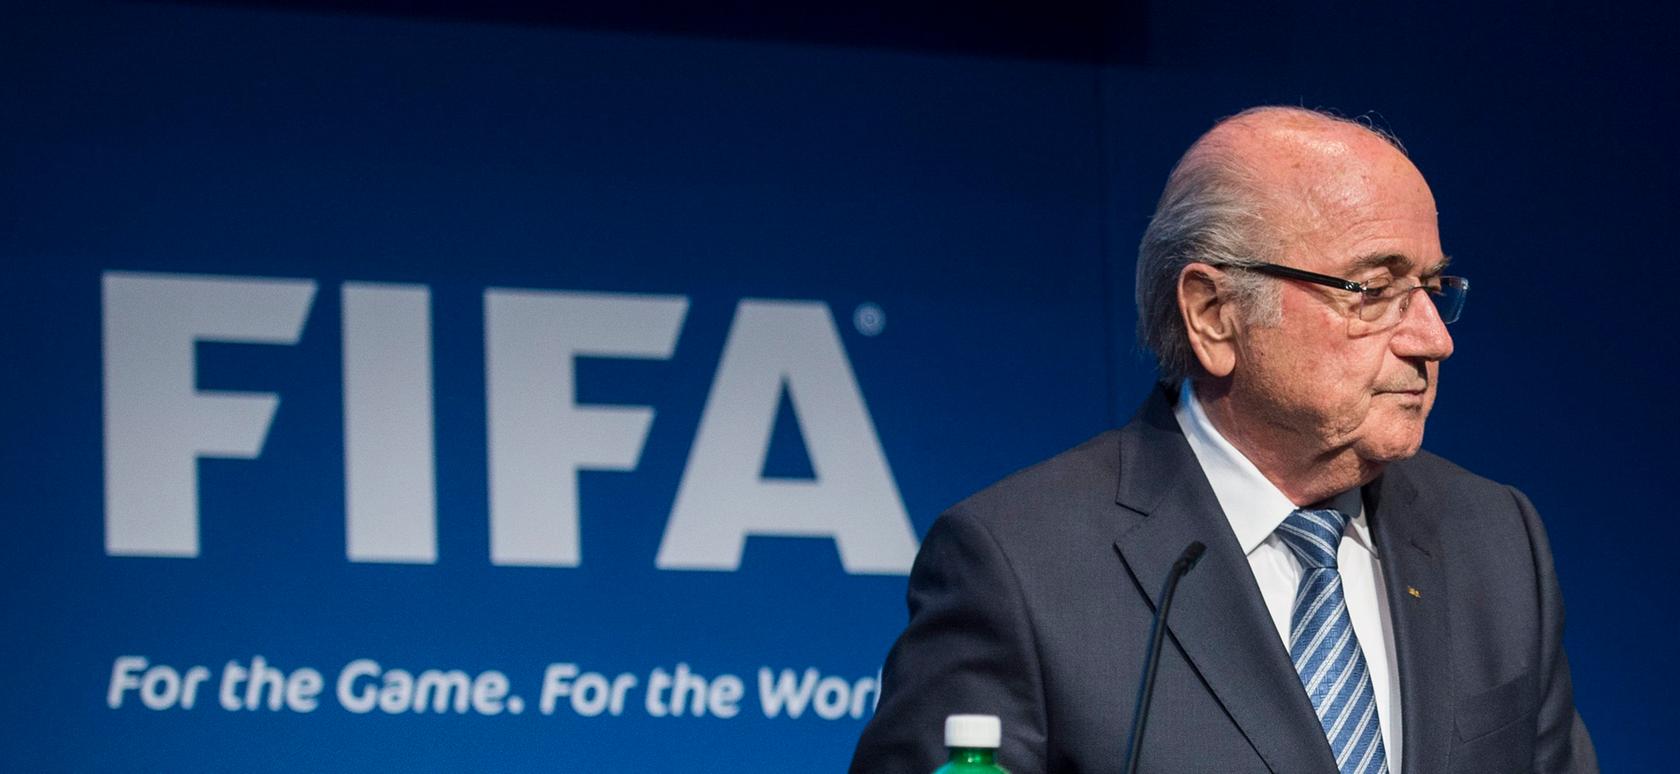 FIFA-Präsident Blatter tritt zurück: FBI soll ermitteln